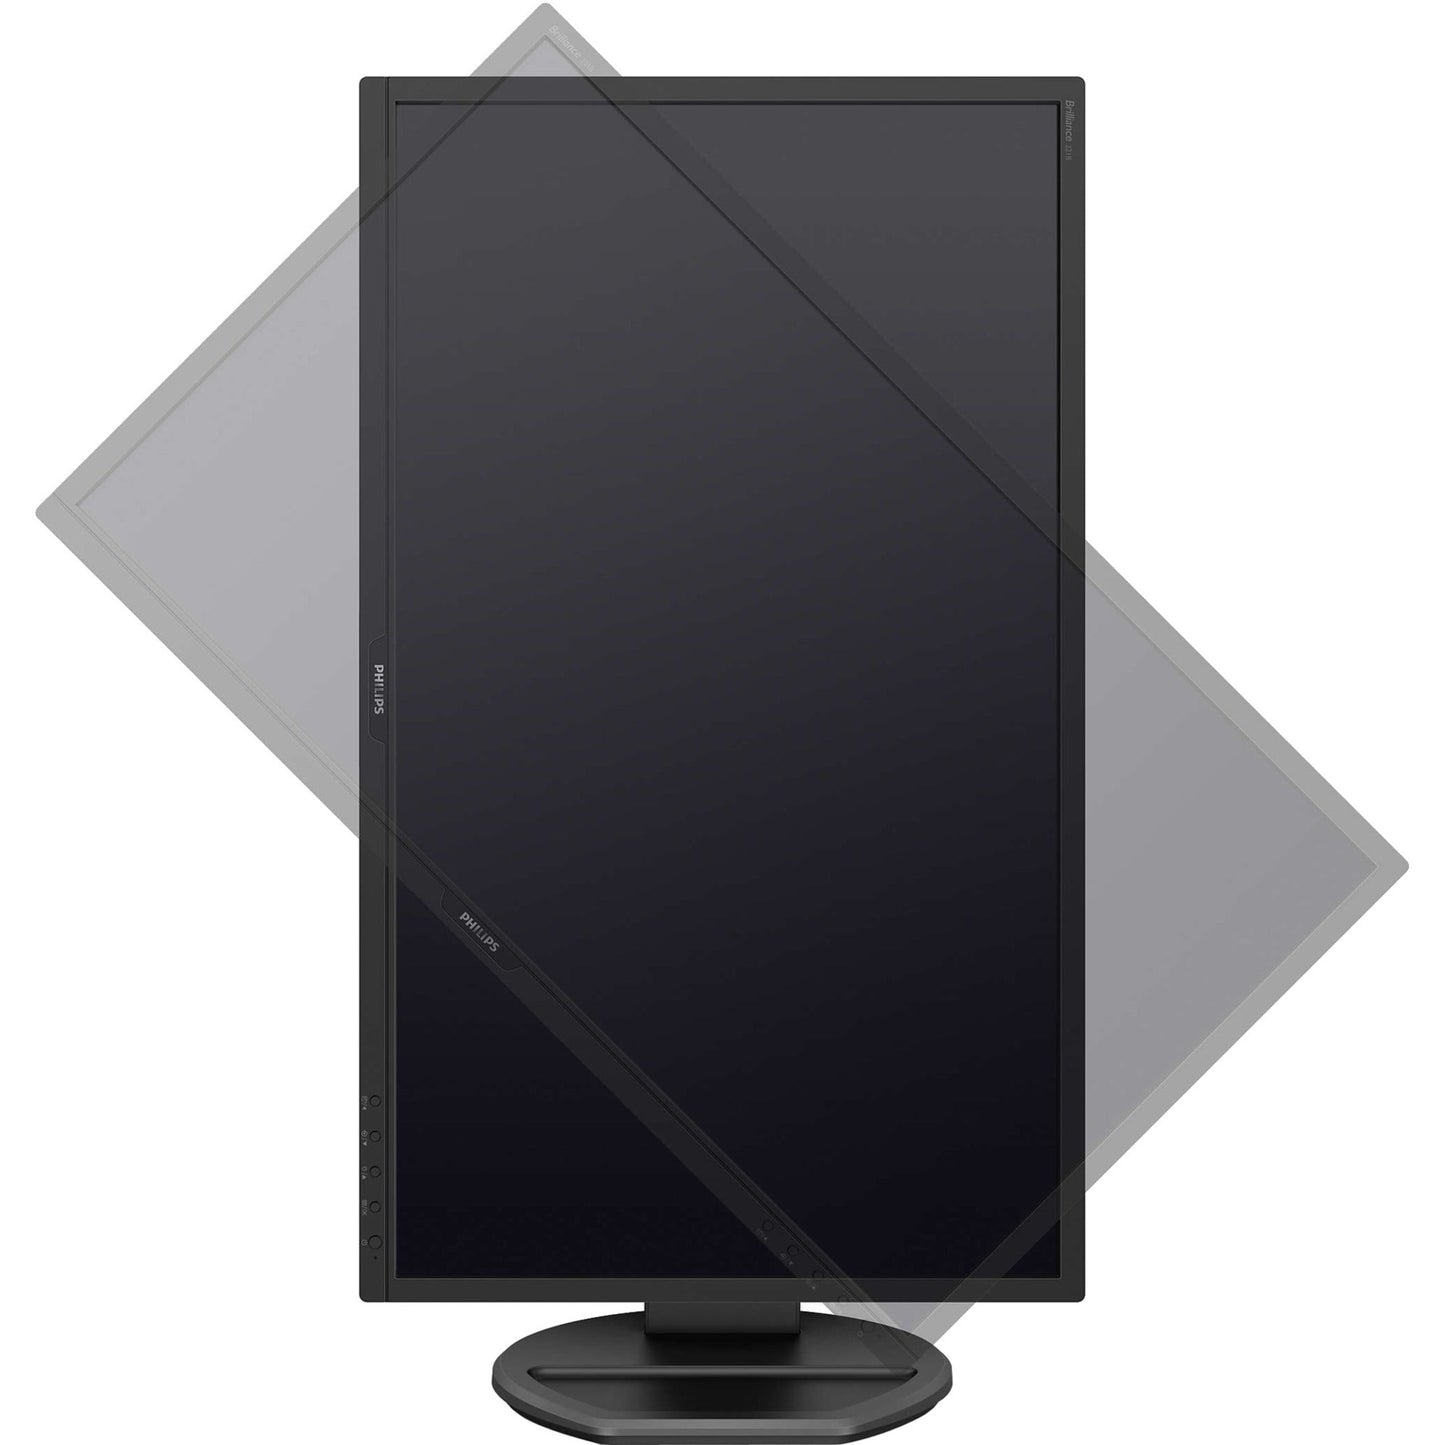 Philips 221B8LJEB 21.5" Full HD LCD Monitor - 16:9 - Textured Black